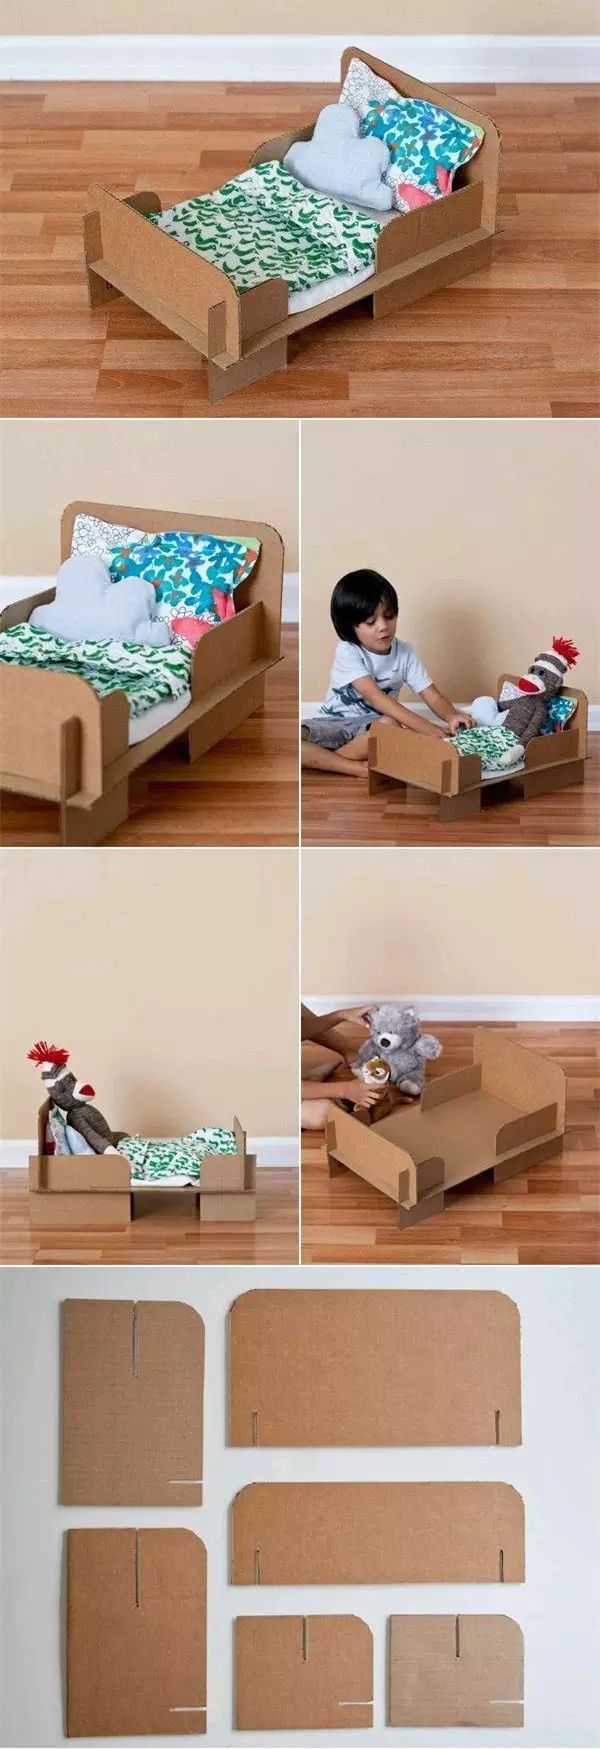 废物利用双11纸皮箱原来能给娃这样用好玩到想存图